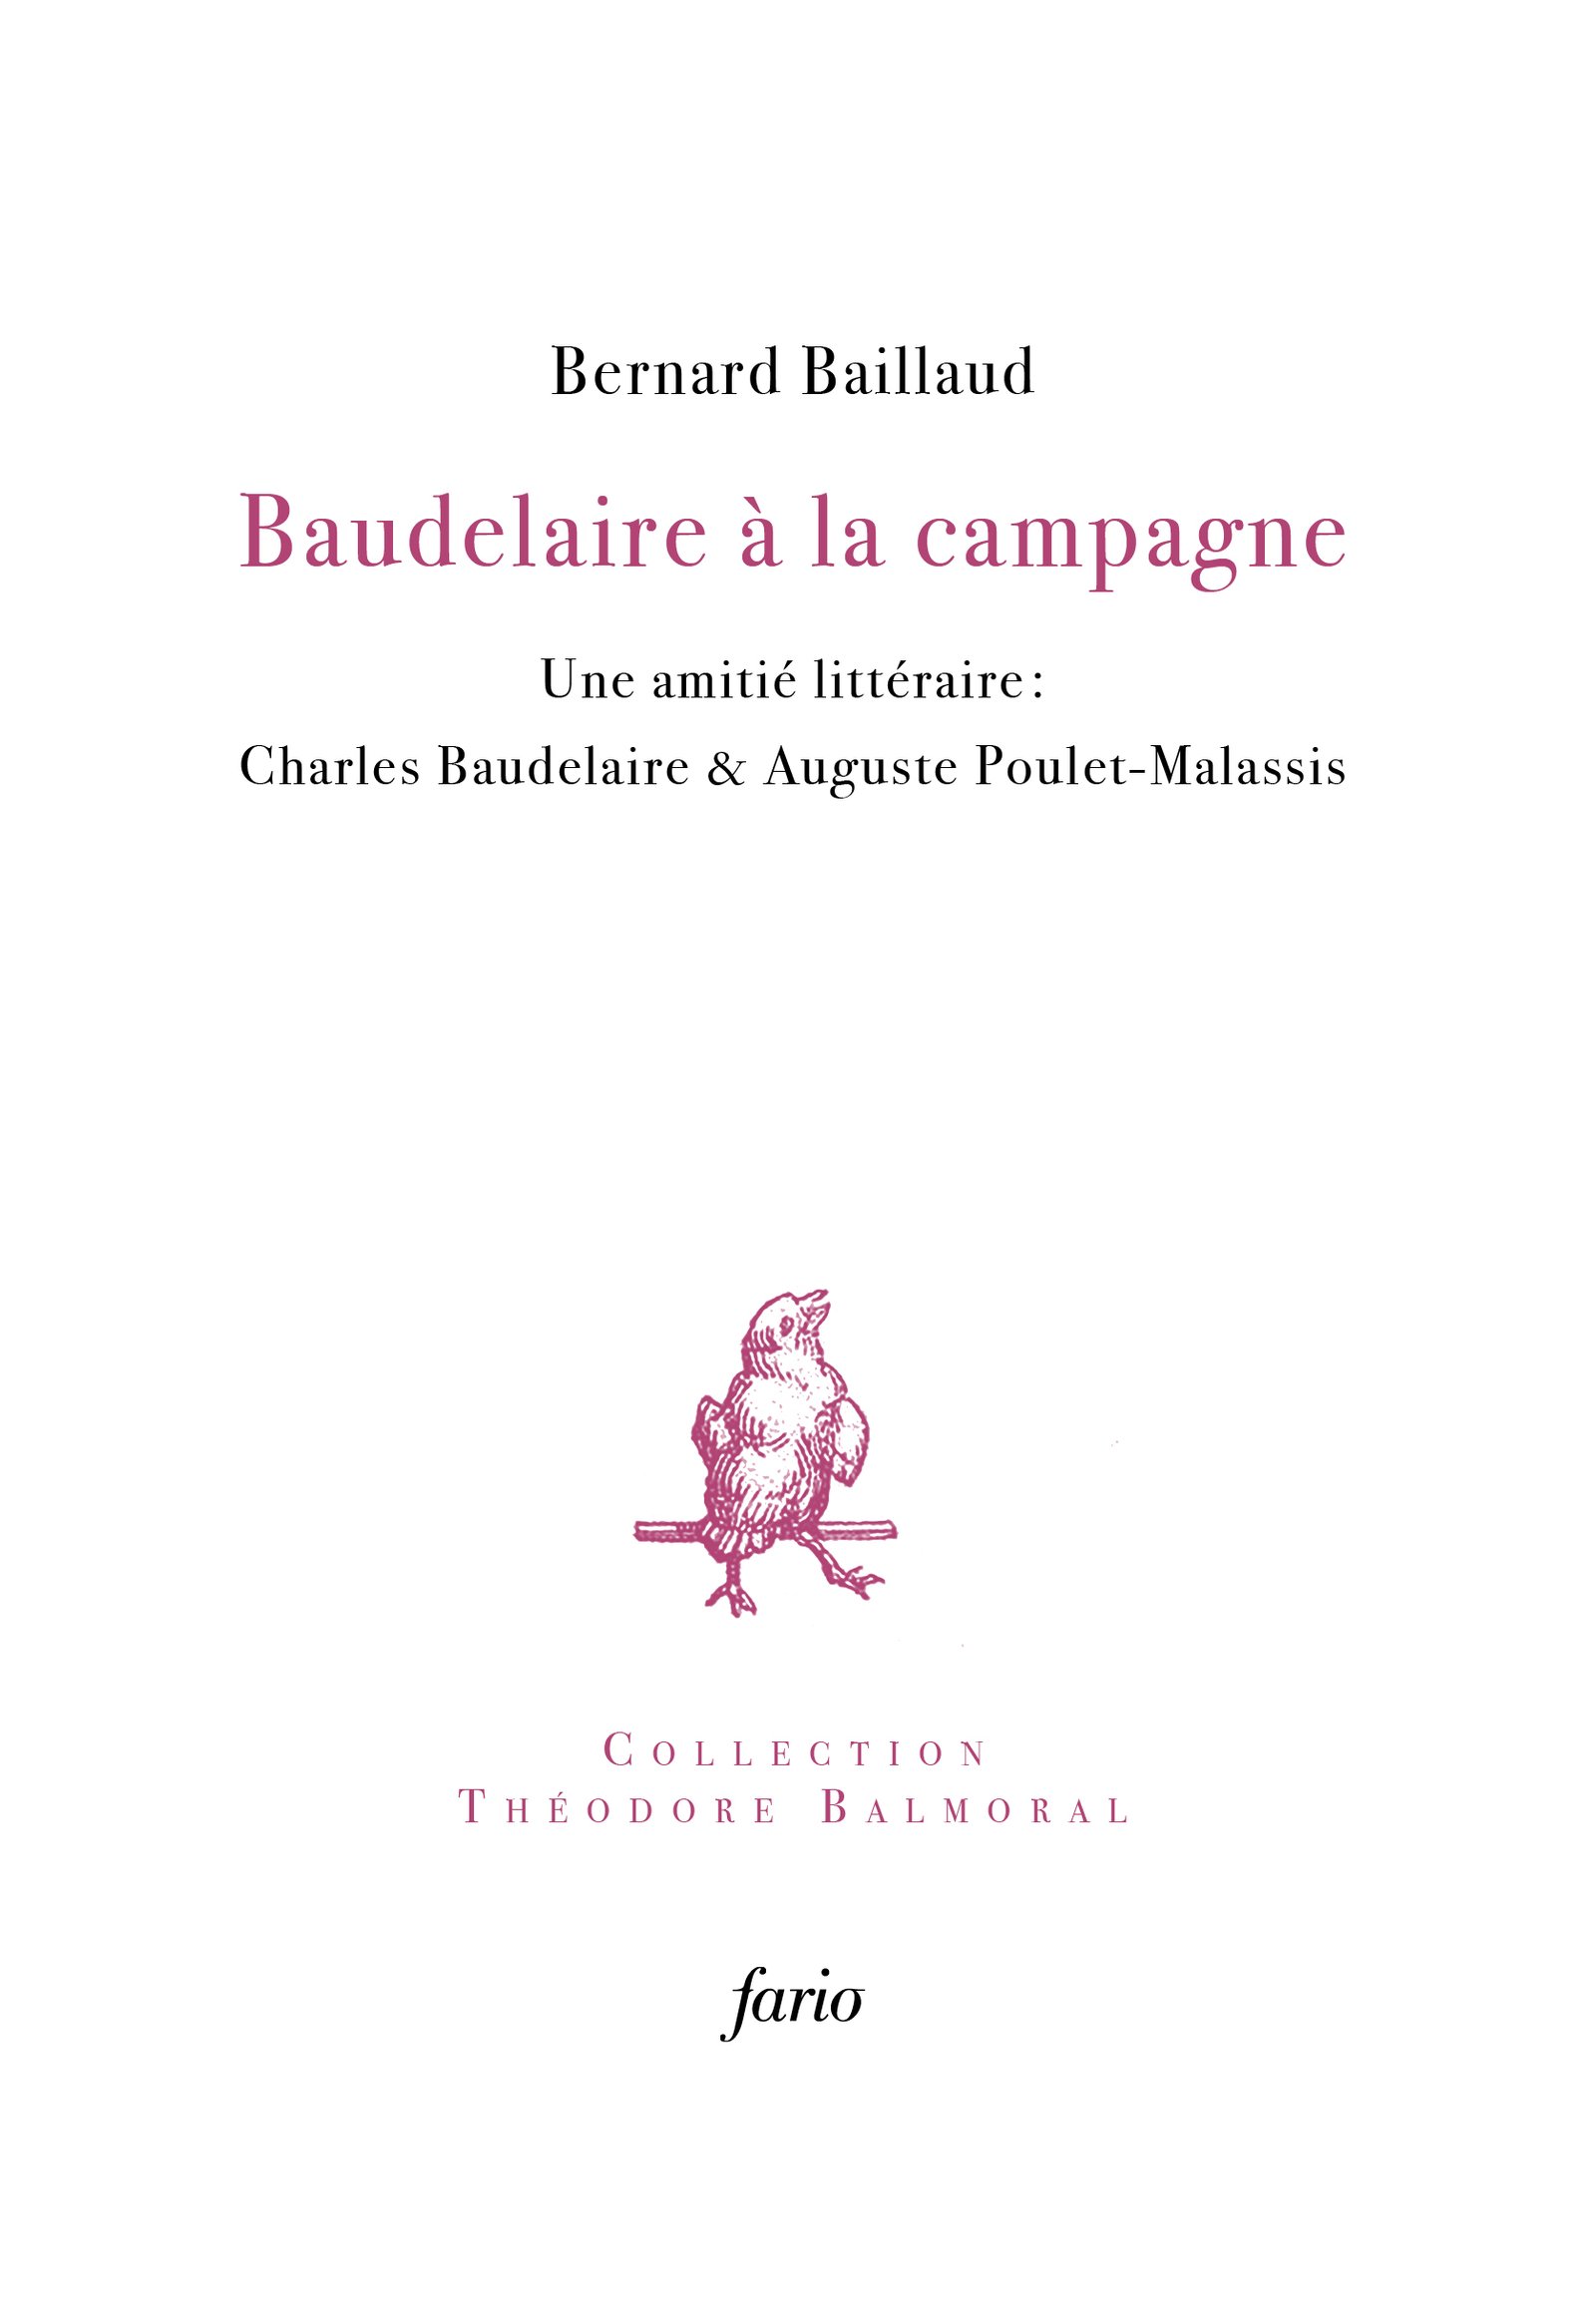 Baudelaire - couvweb